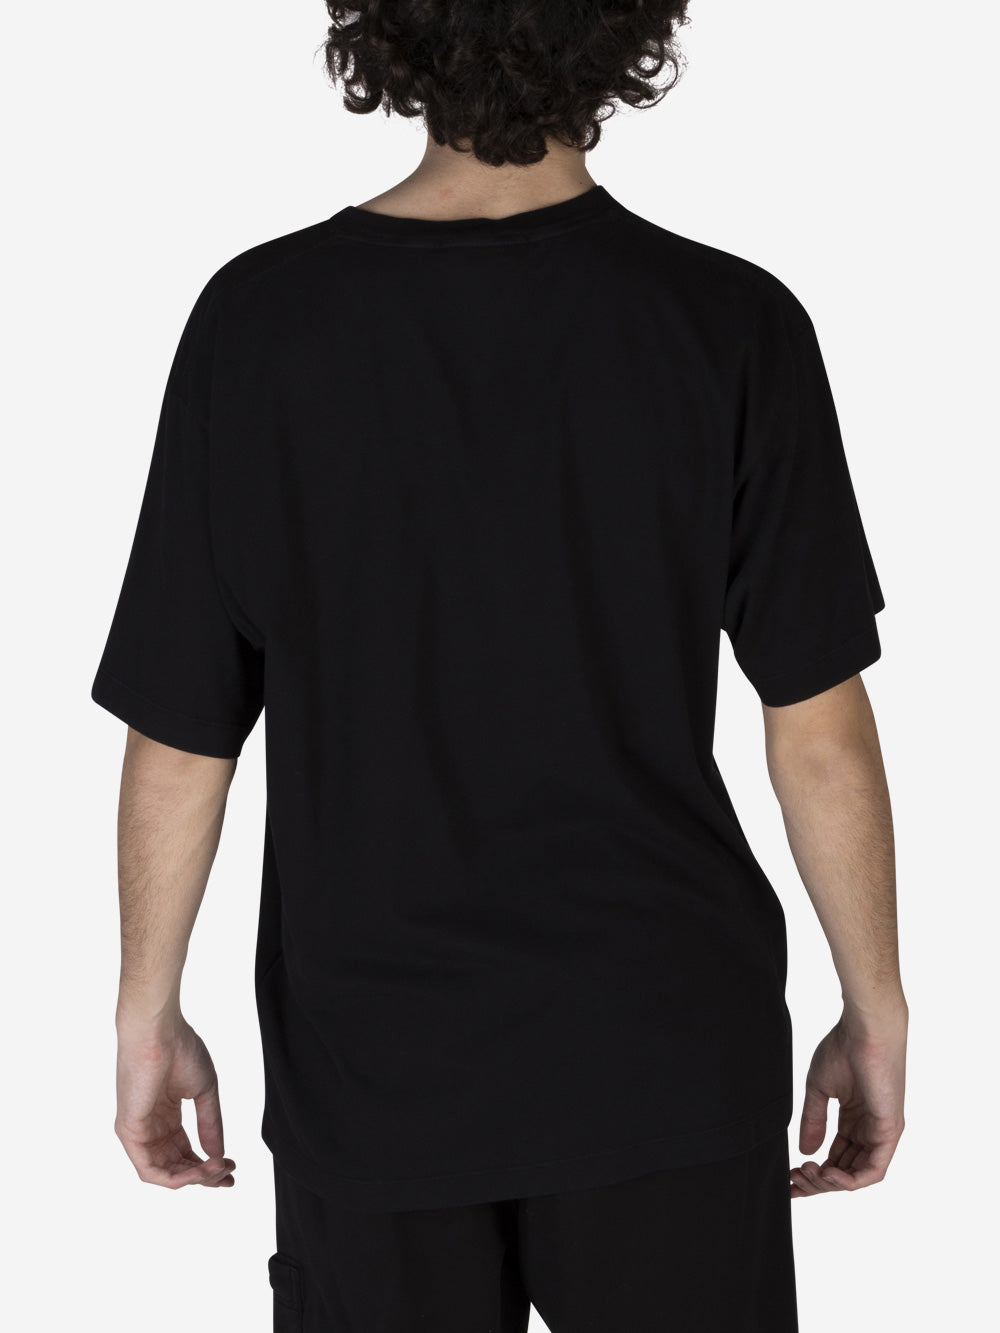 STONE ISLAND T-shirt in cotone Nero Urbanstaroma